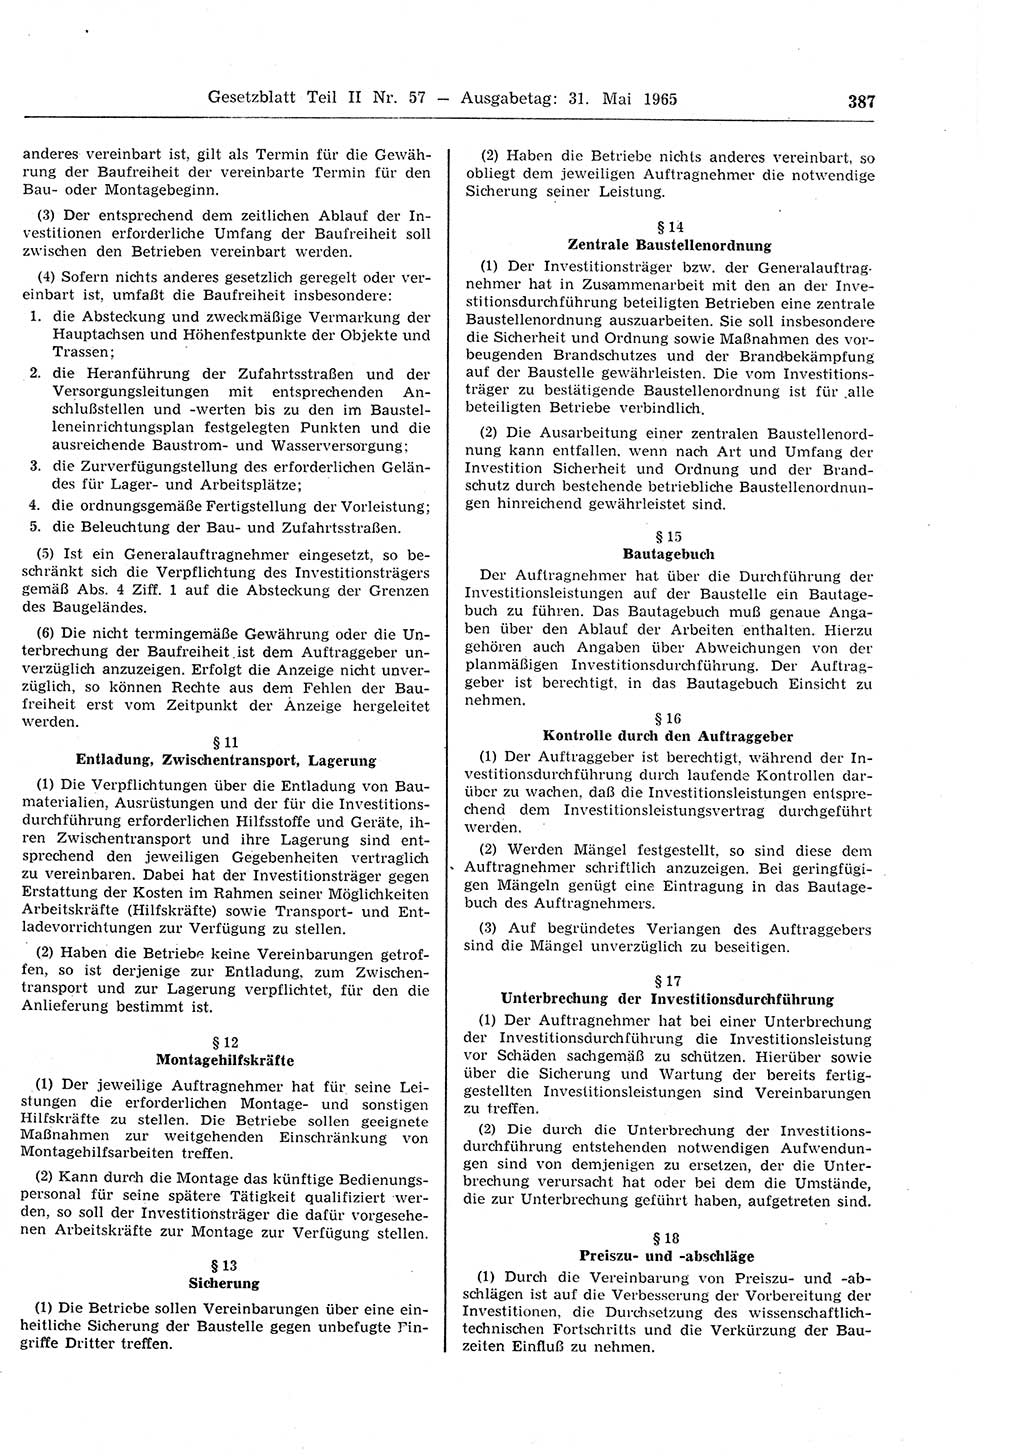 Gesetzblatt (GBl.) der Deutschen Demokratischen Republik (DDR) Teil ⅠⅠ 1965, Seite 387 (GBl. DDR ⅠⅠ 1965, S. 387)